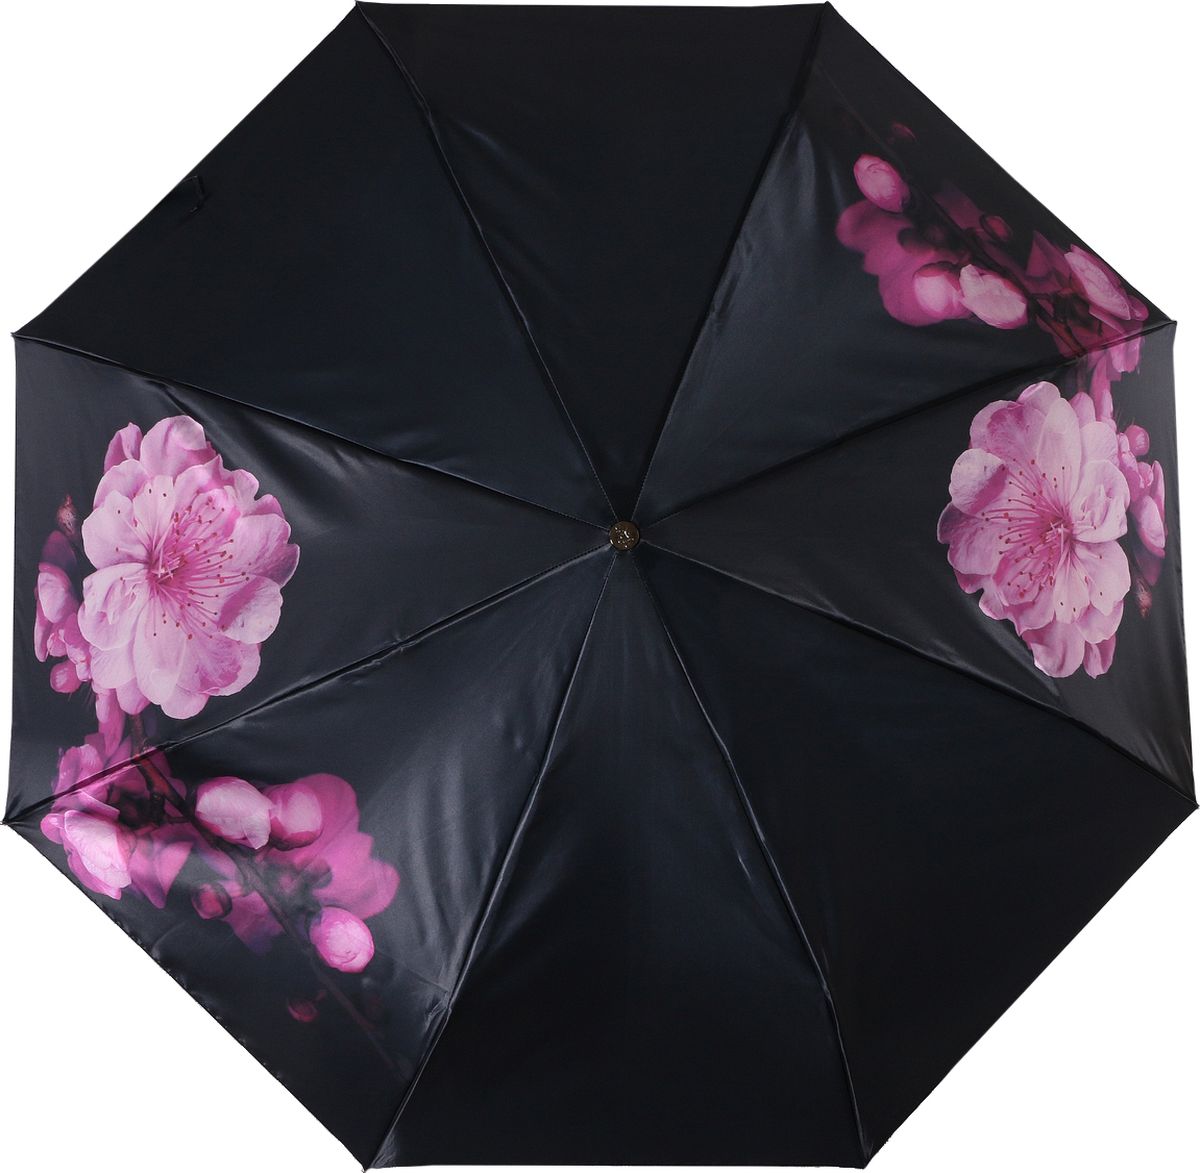 Зонт женский Trust, автомат, 3 сложения, цвет: черный, розовый. 30472-11